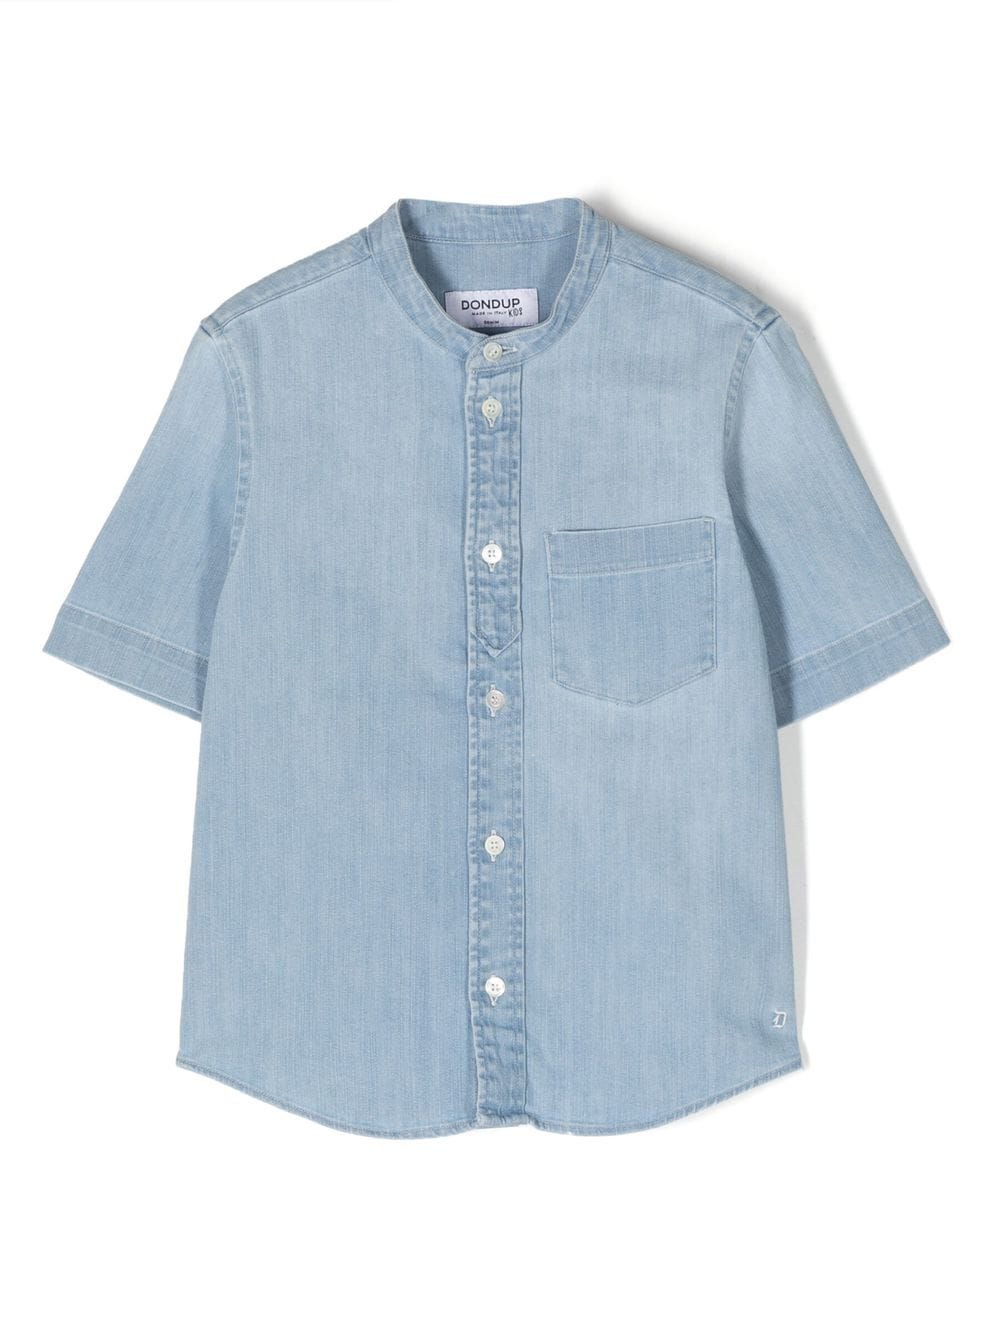 DONDUP KIDS short-sleeve denim shirt - Blue von DONDUP KIDS